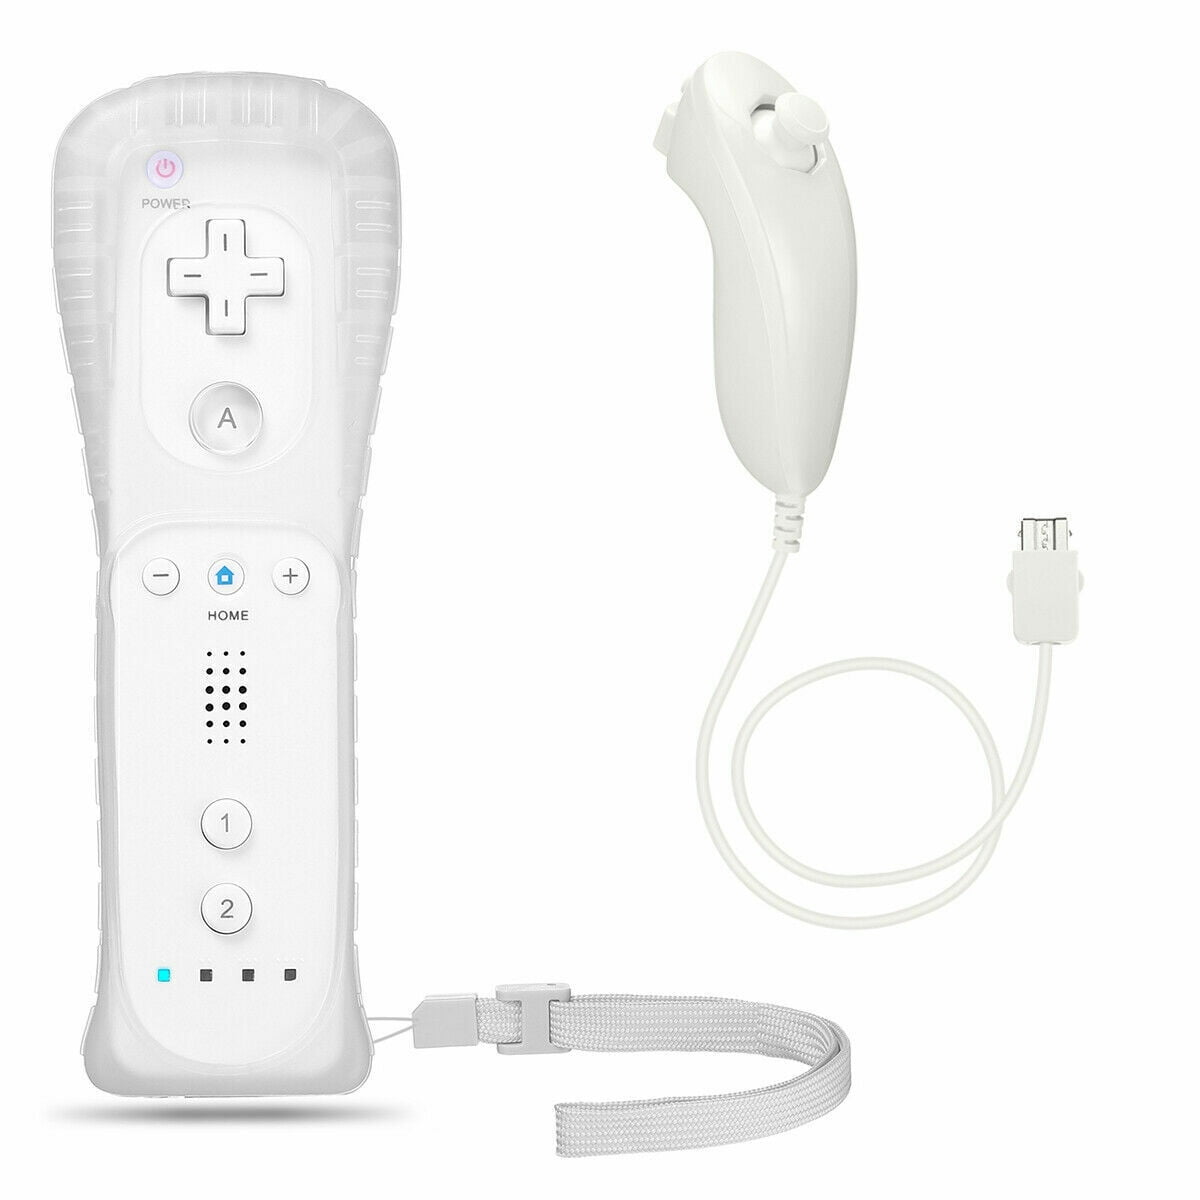 Wii Motion Plus Precisión (Blanco)